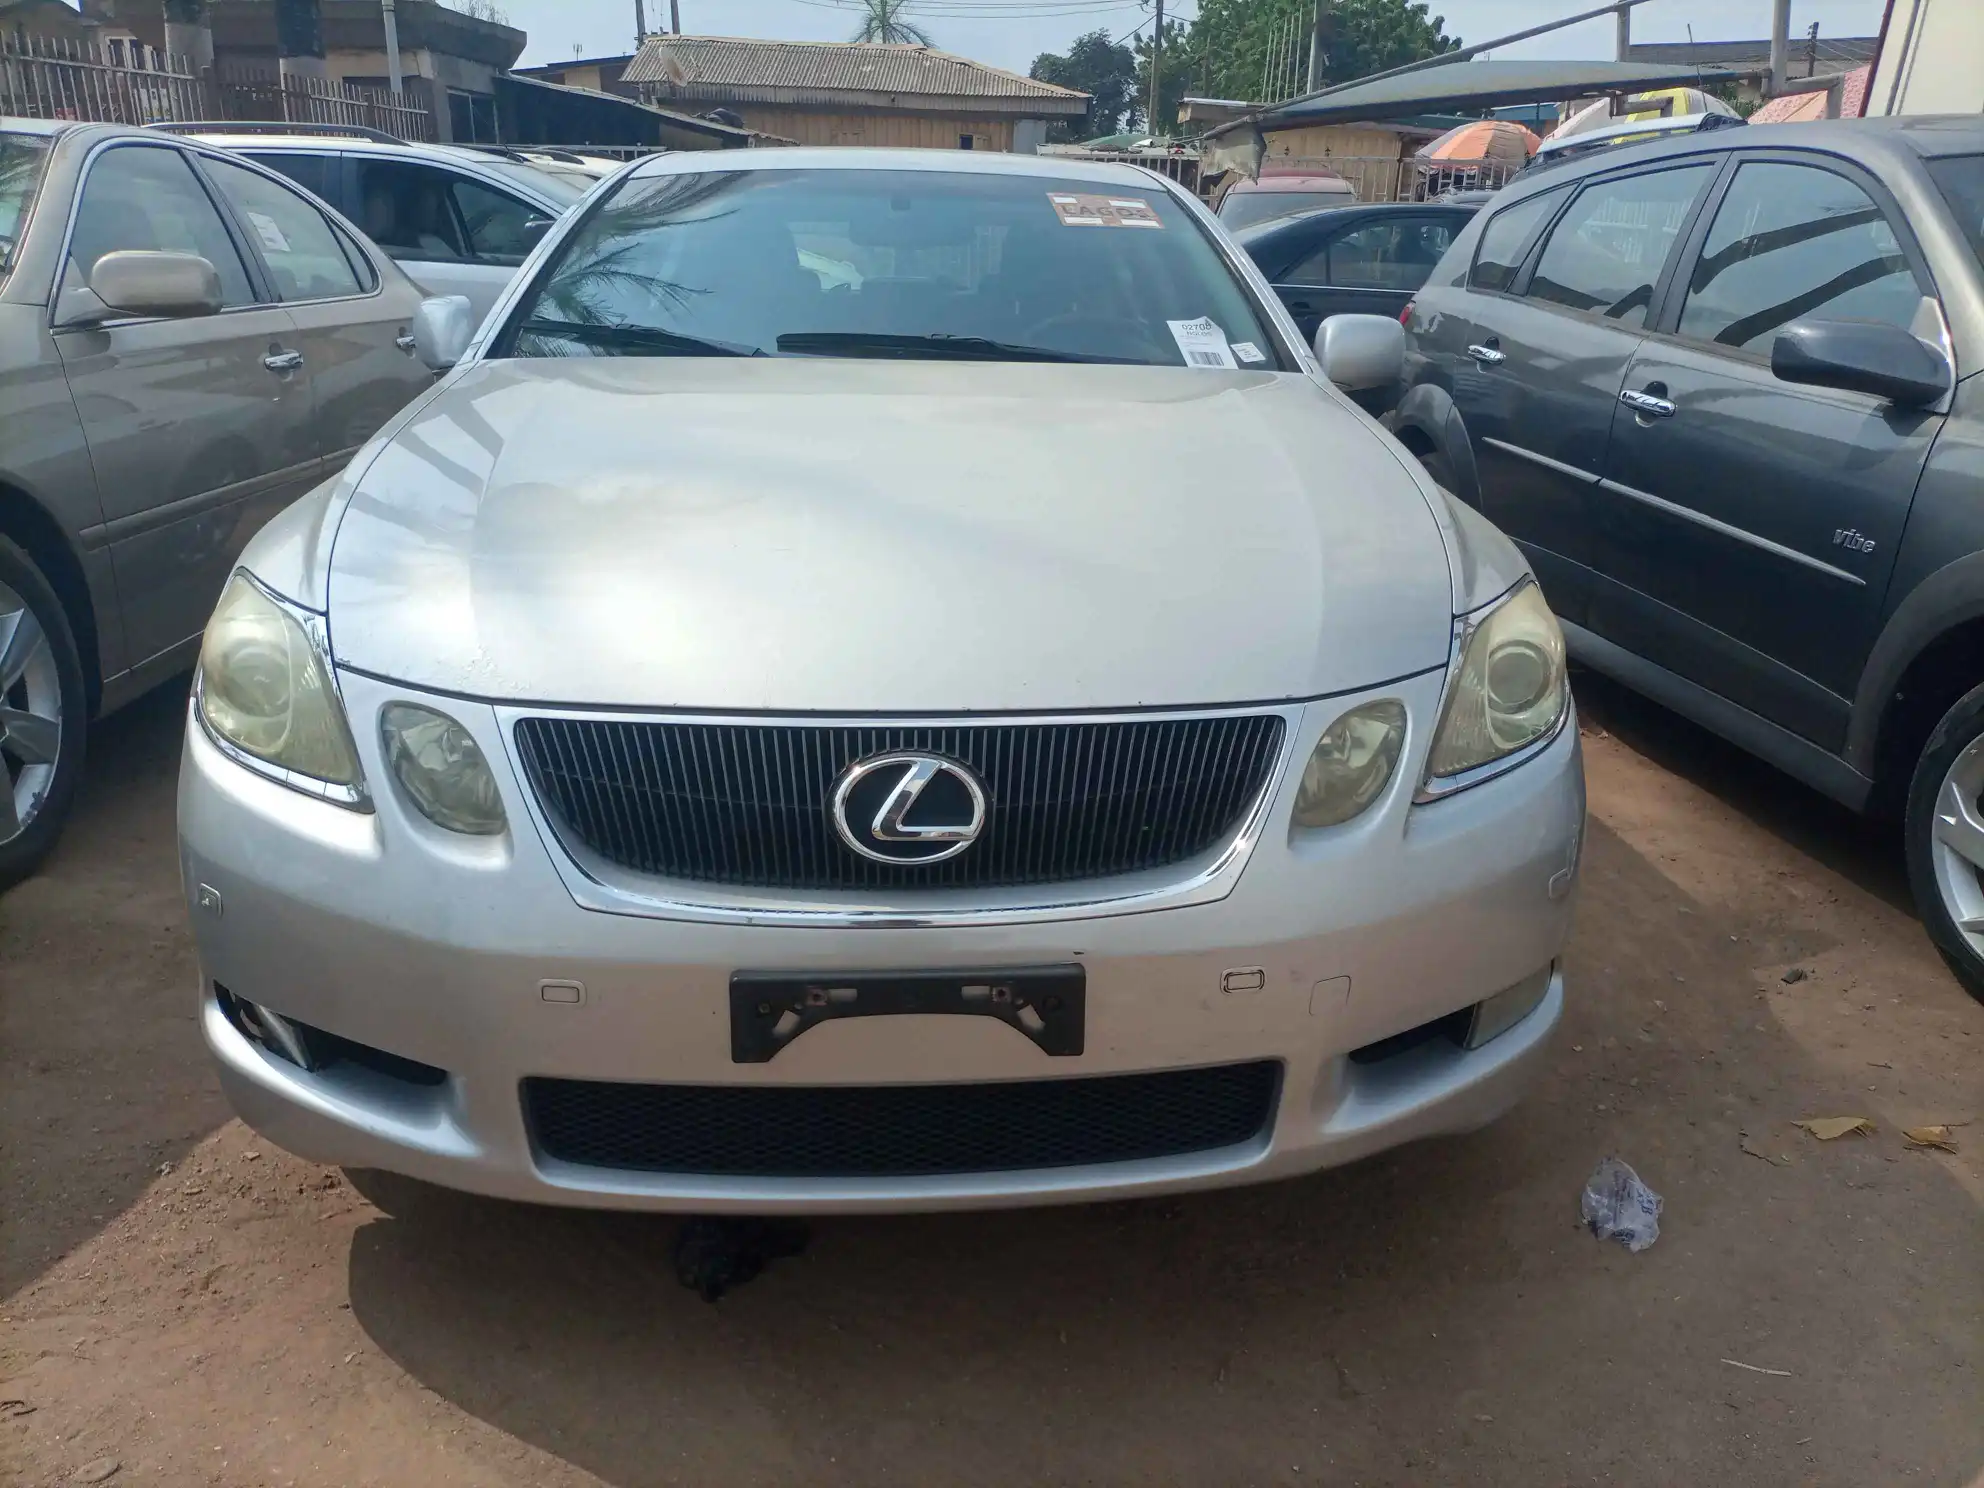 How Much Is Lexus Gs 350 In Nigeria